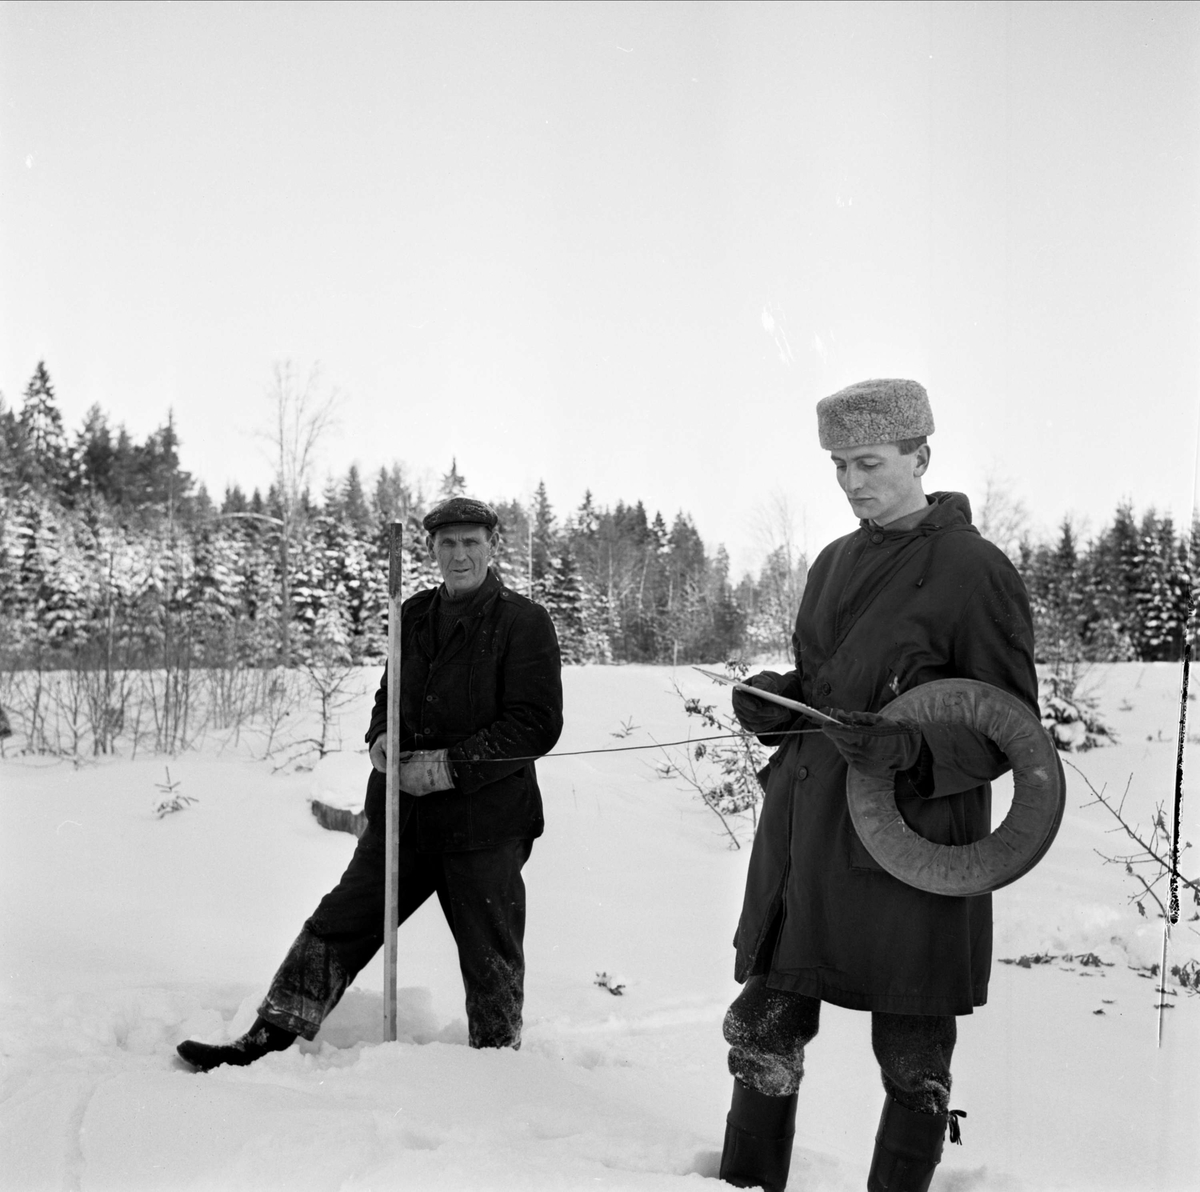 Sannolikt lantmätare, Söderfors, Uppland 1967